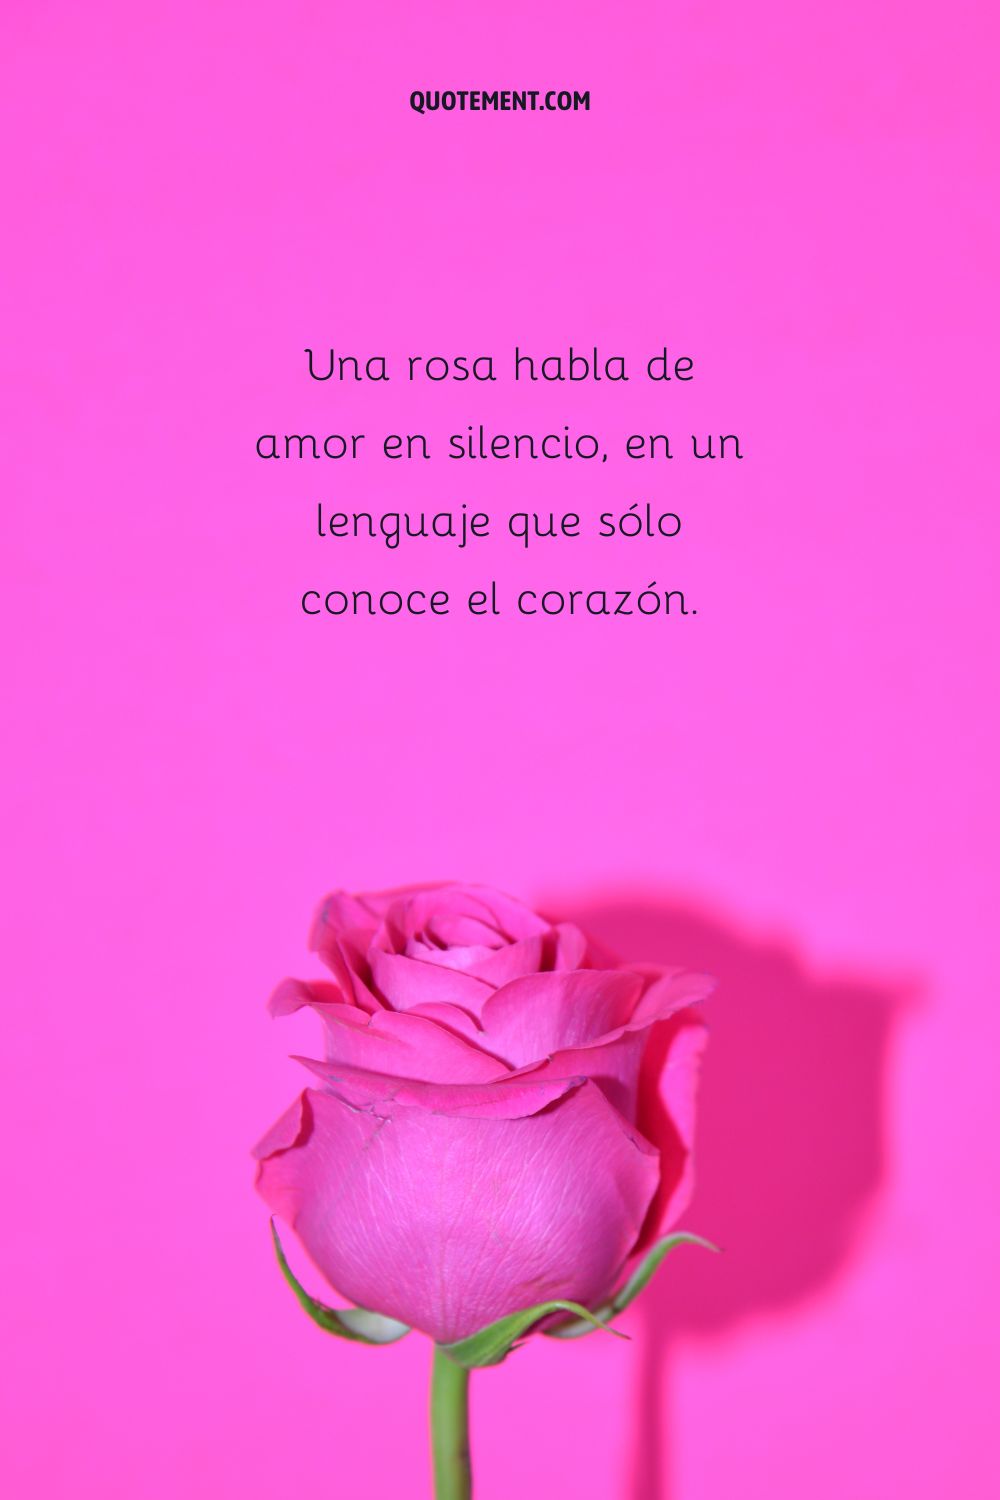 Una rosa habla de amor en silencio, en un lenguaje que sólo conoce el corazón.